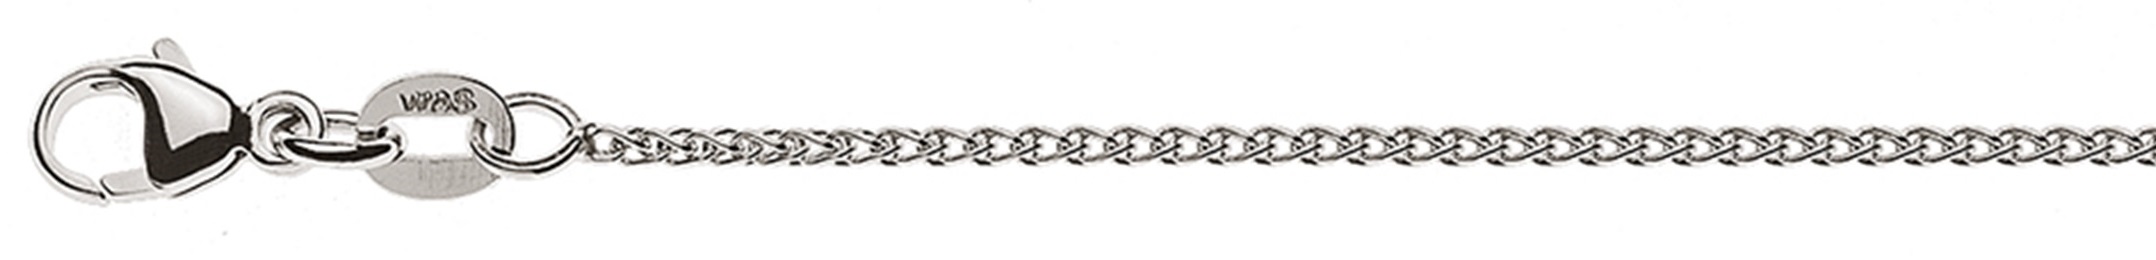 AURONOS Élégance Necklace white gold 14K cable chain 45cm 1.2mm